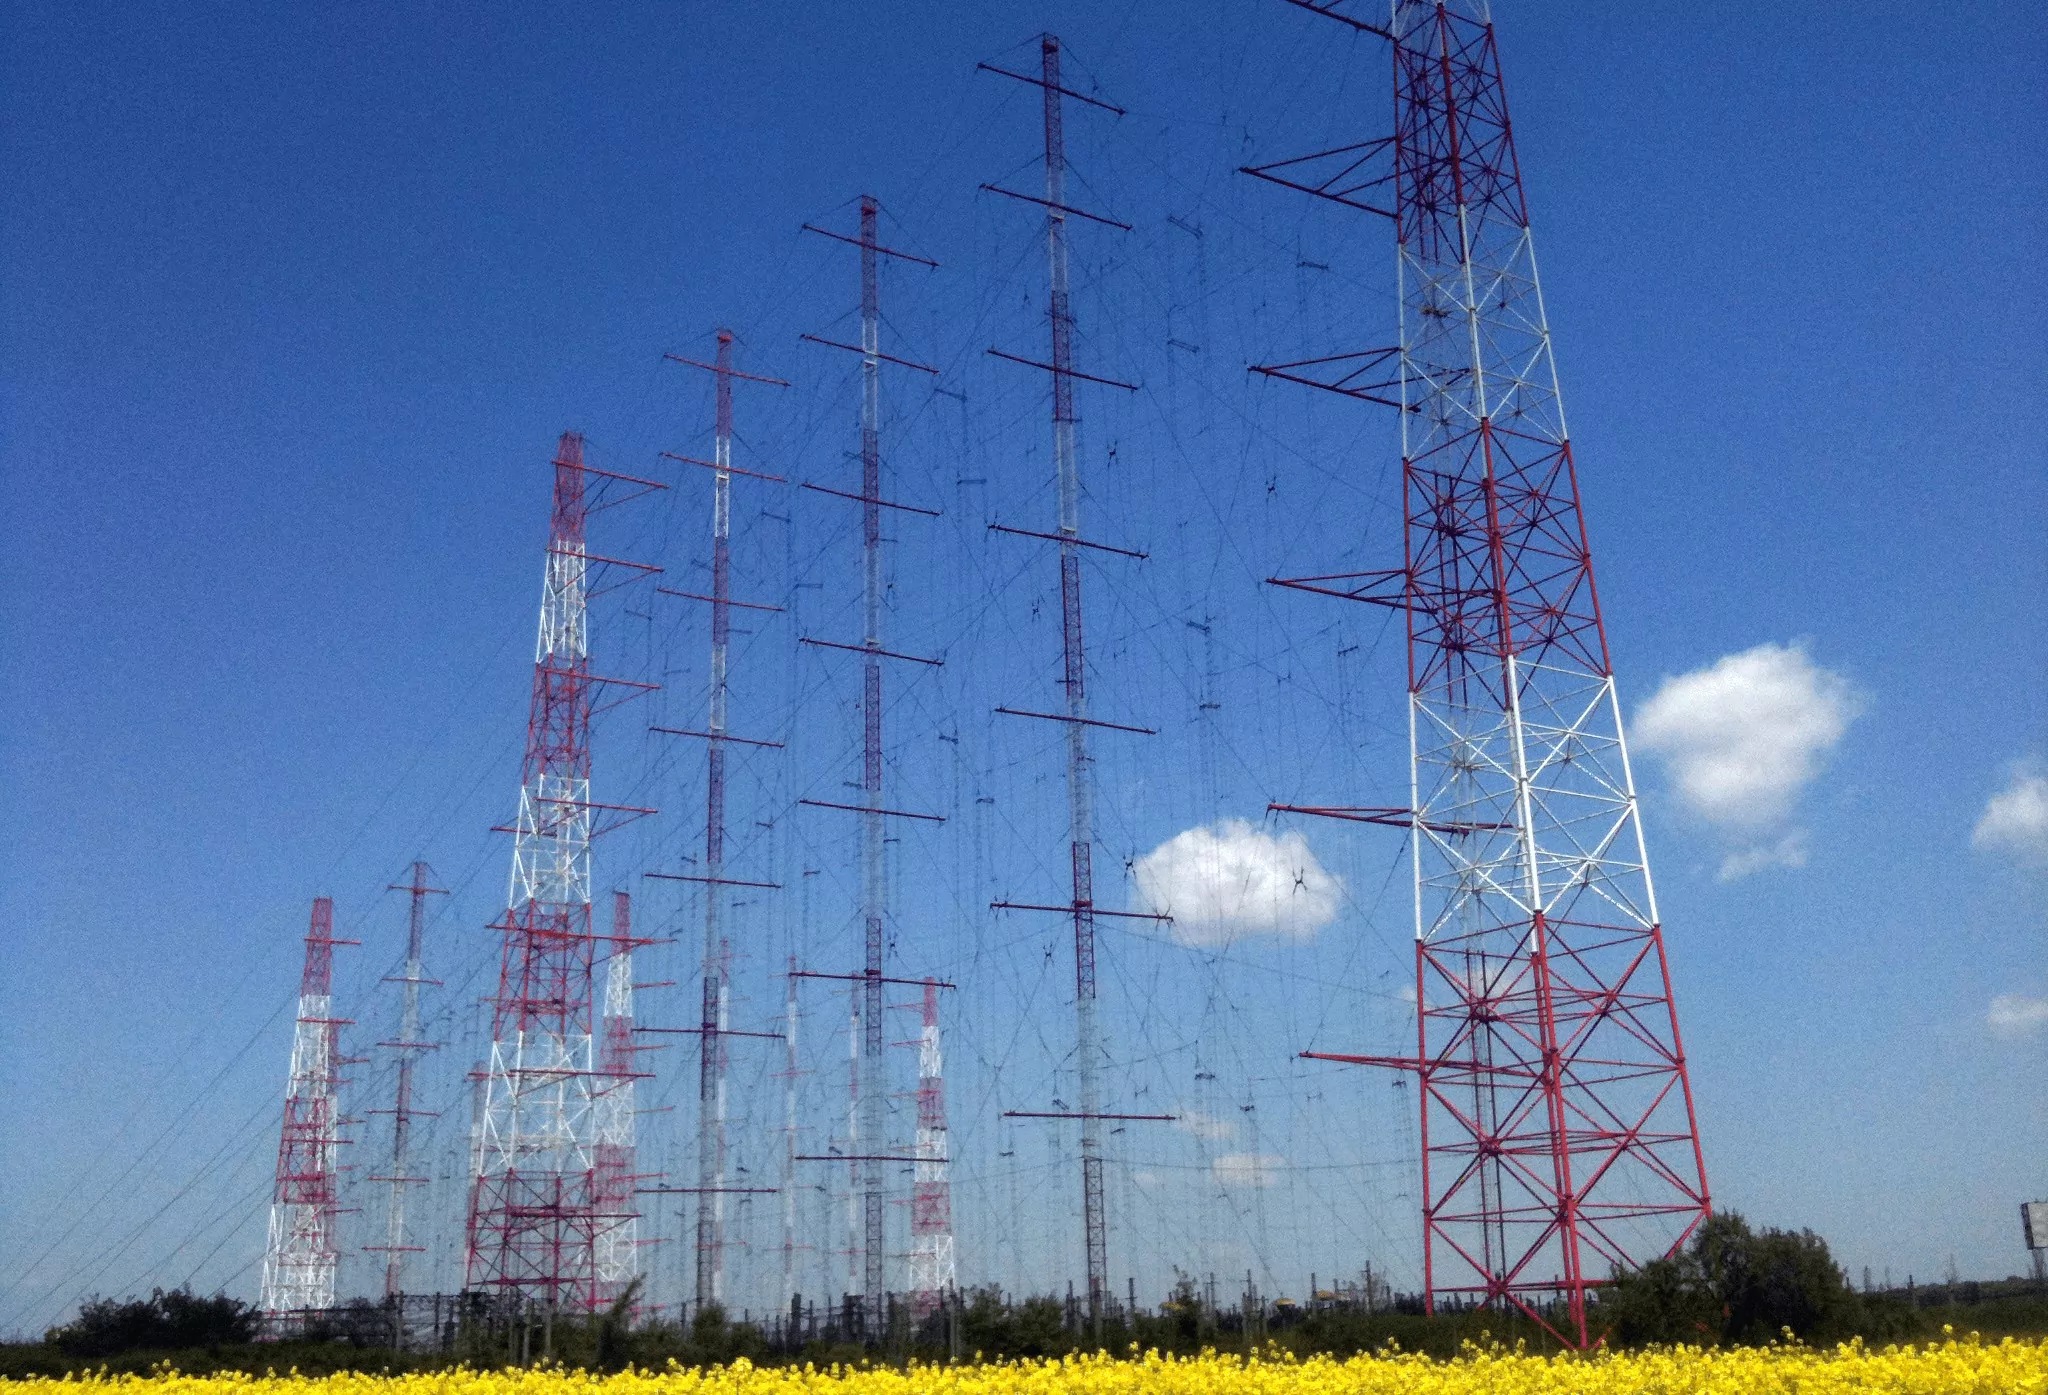 NEXUS-IBA shortwave radio service